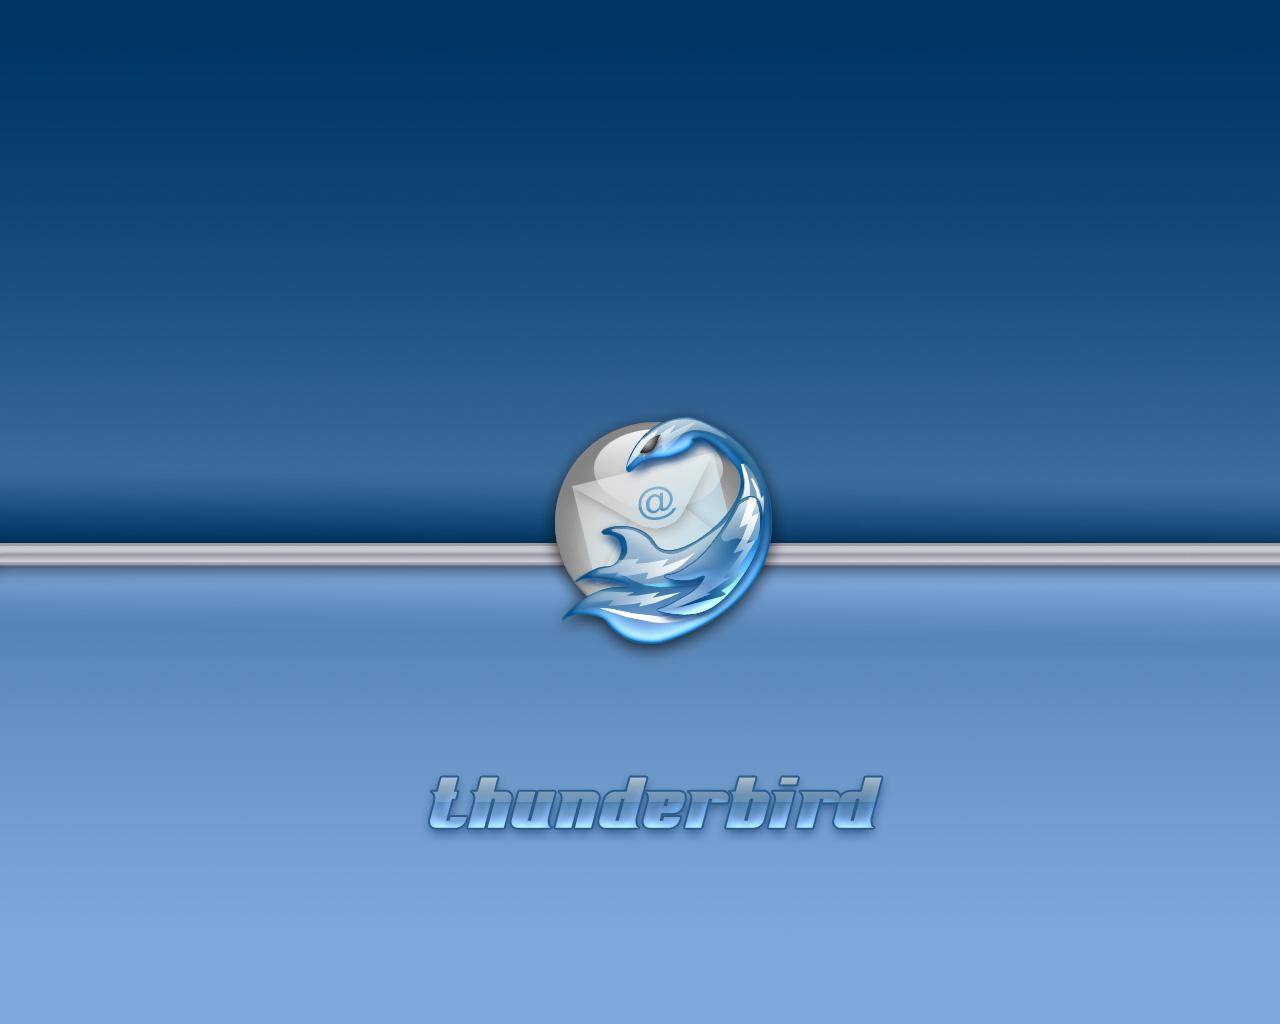 Thunderbird 05